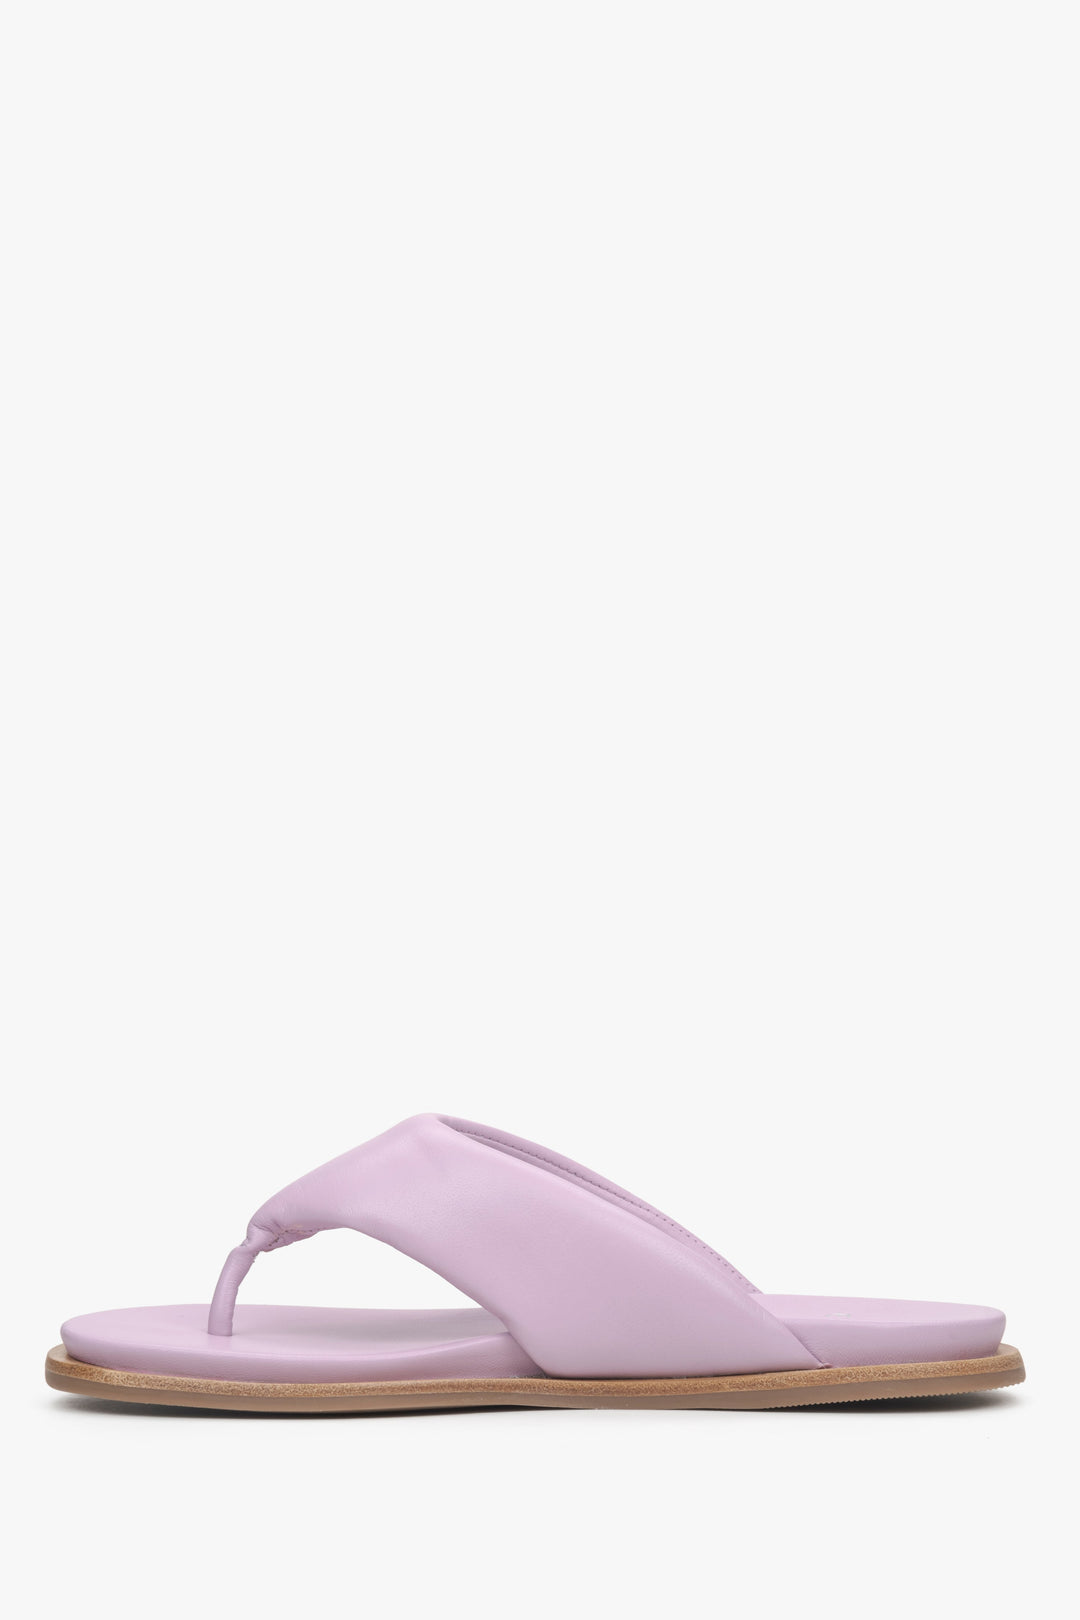 Women's lilac leather slide sandals Estro - shoe profile.